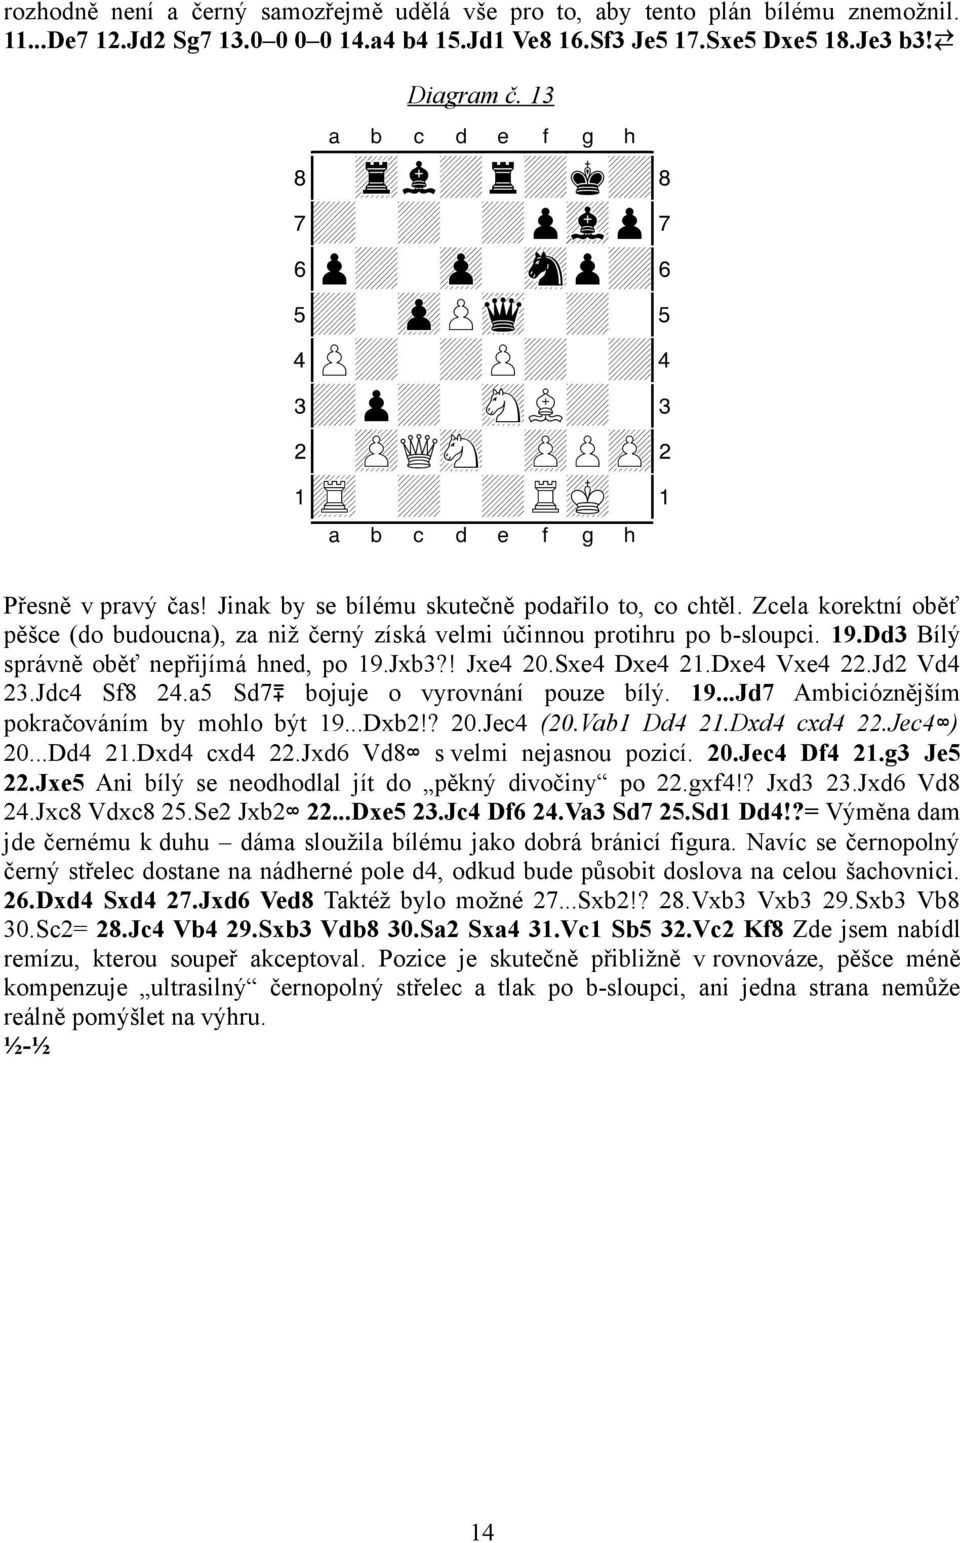 Zcela korektní oběť pěšce (do budoucna), za niž černý získá velmi účinnou protihru po b-sloupci. 19.Dd3 Bílý správně oběť nepřijímá hned, po 19.Jxb3?! Jxe4 20.Sxe4 Dxe4 21.Dxe4 Vxe4 22.Jd2 Vd4 23.